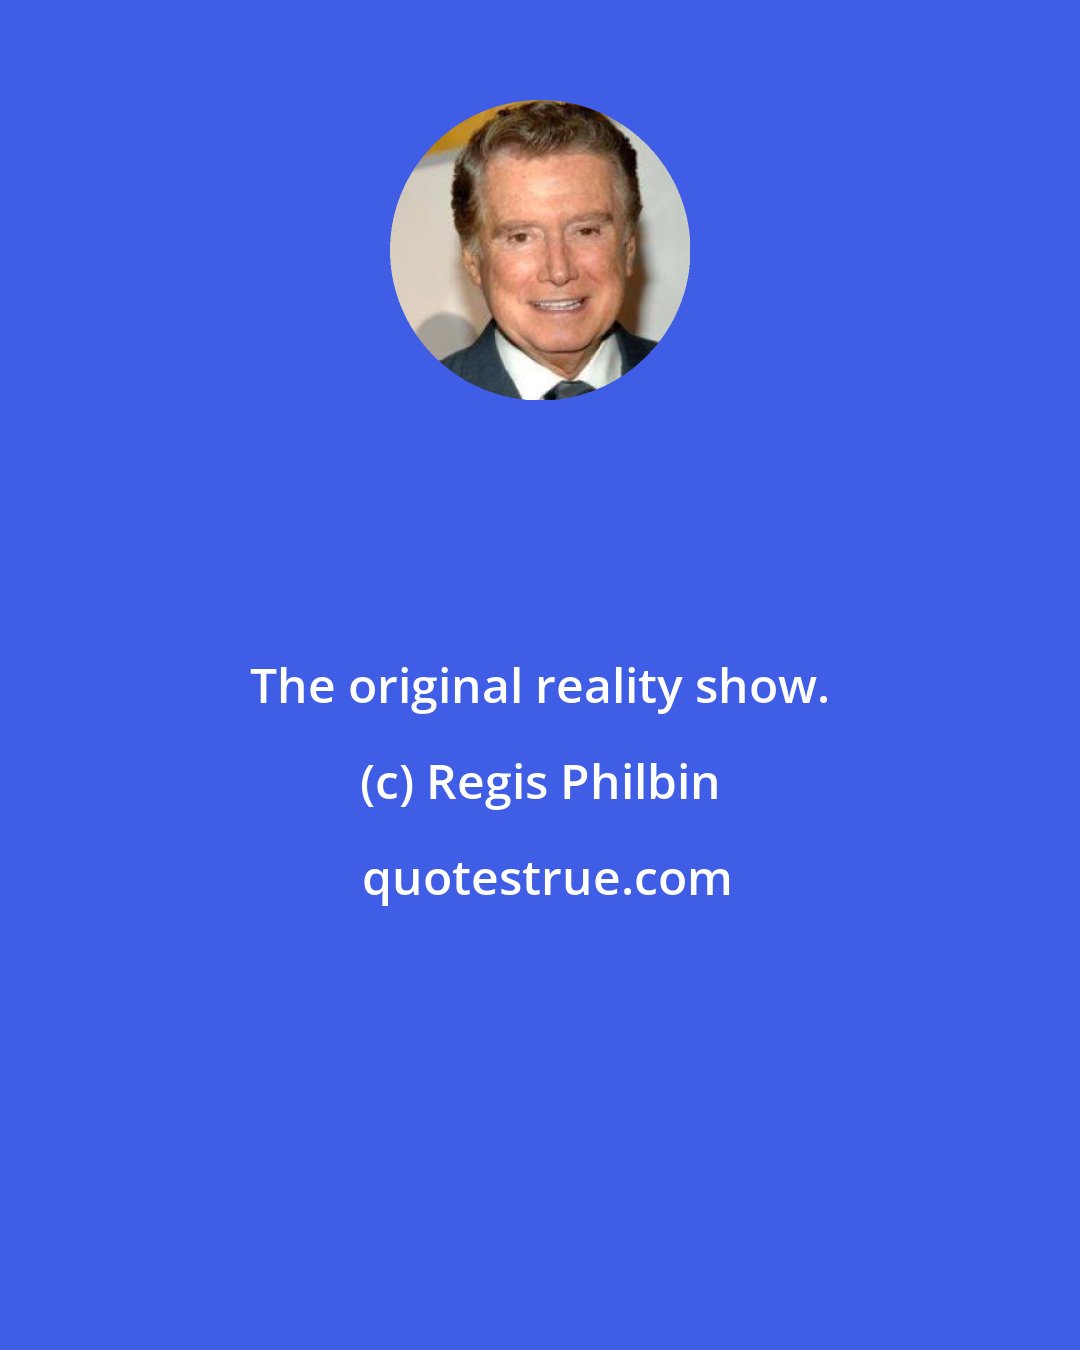 Regis Philbin: The original reality show.